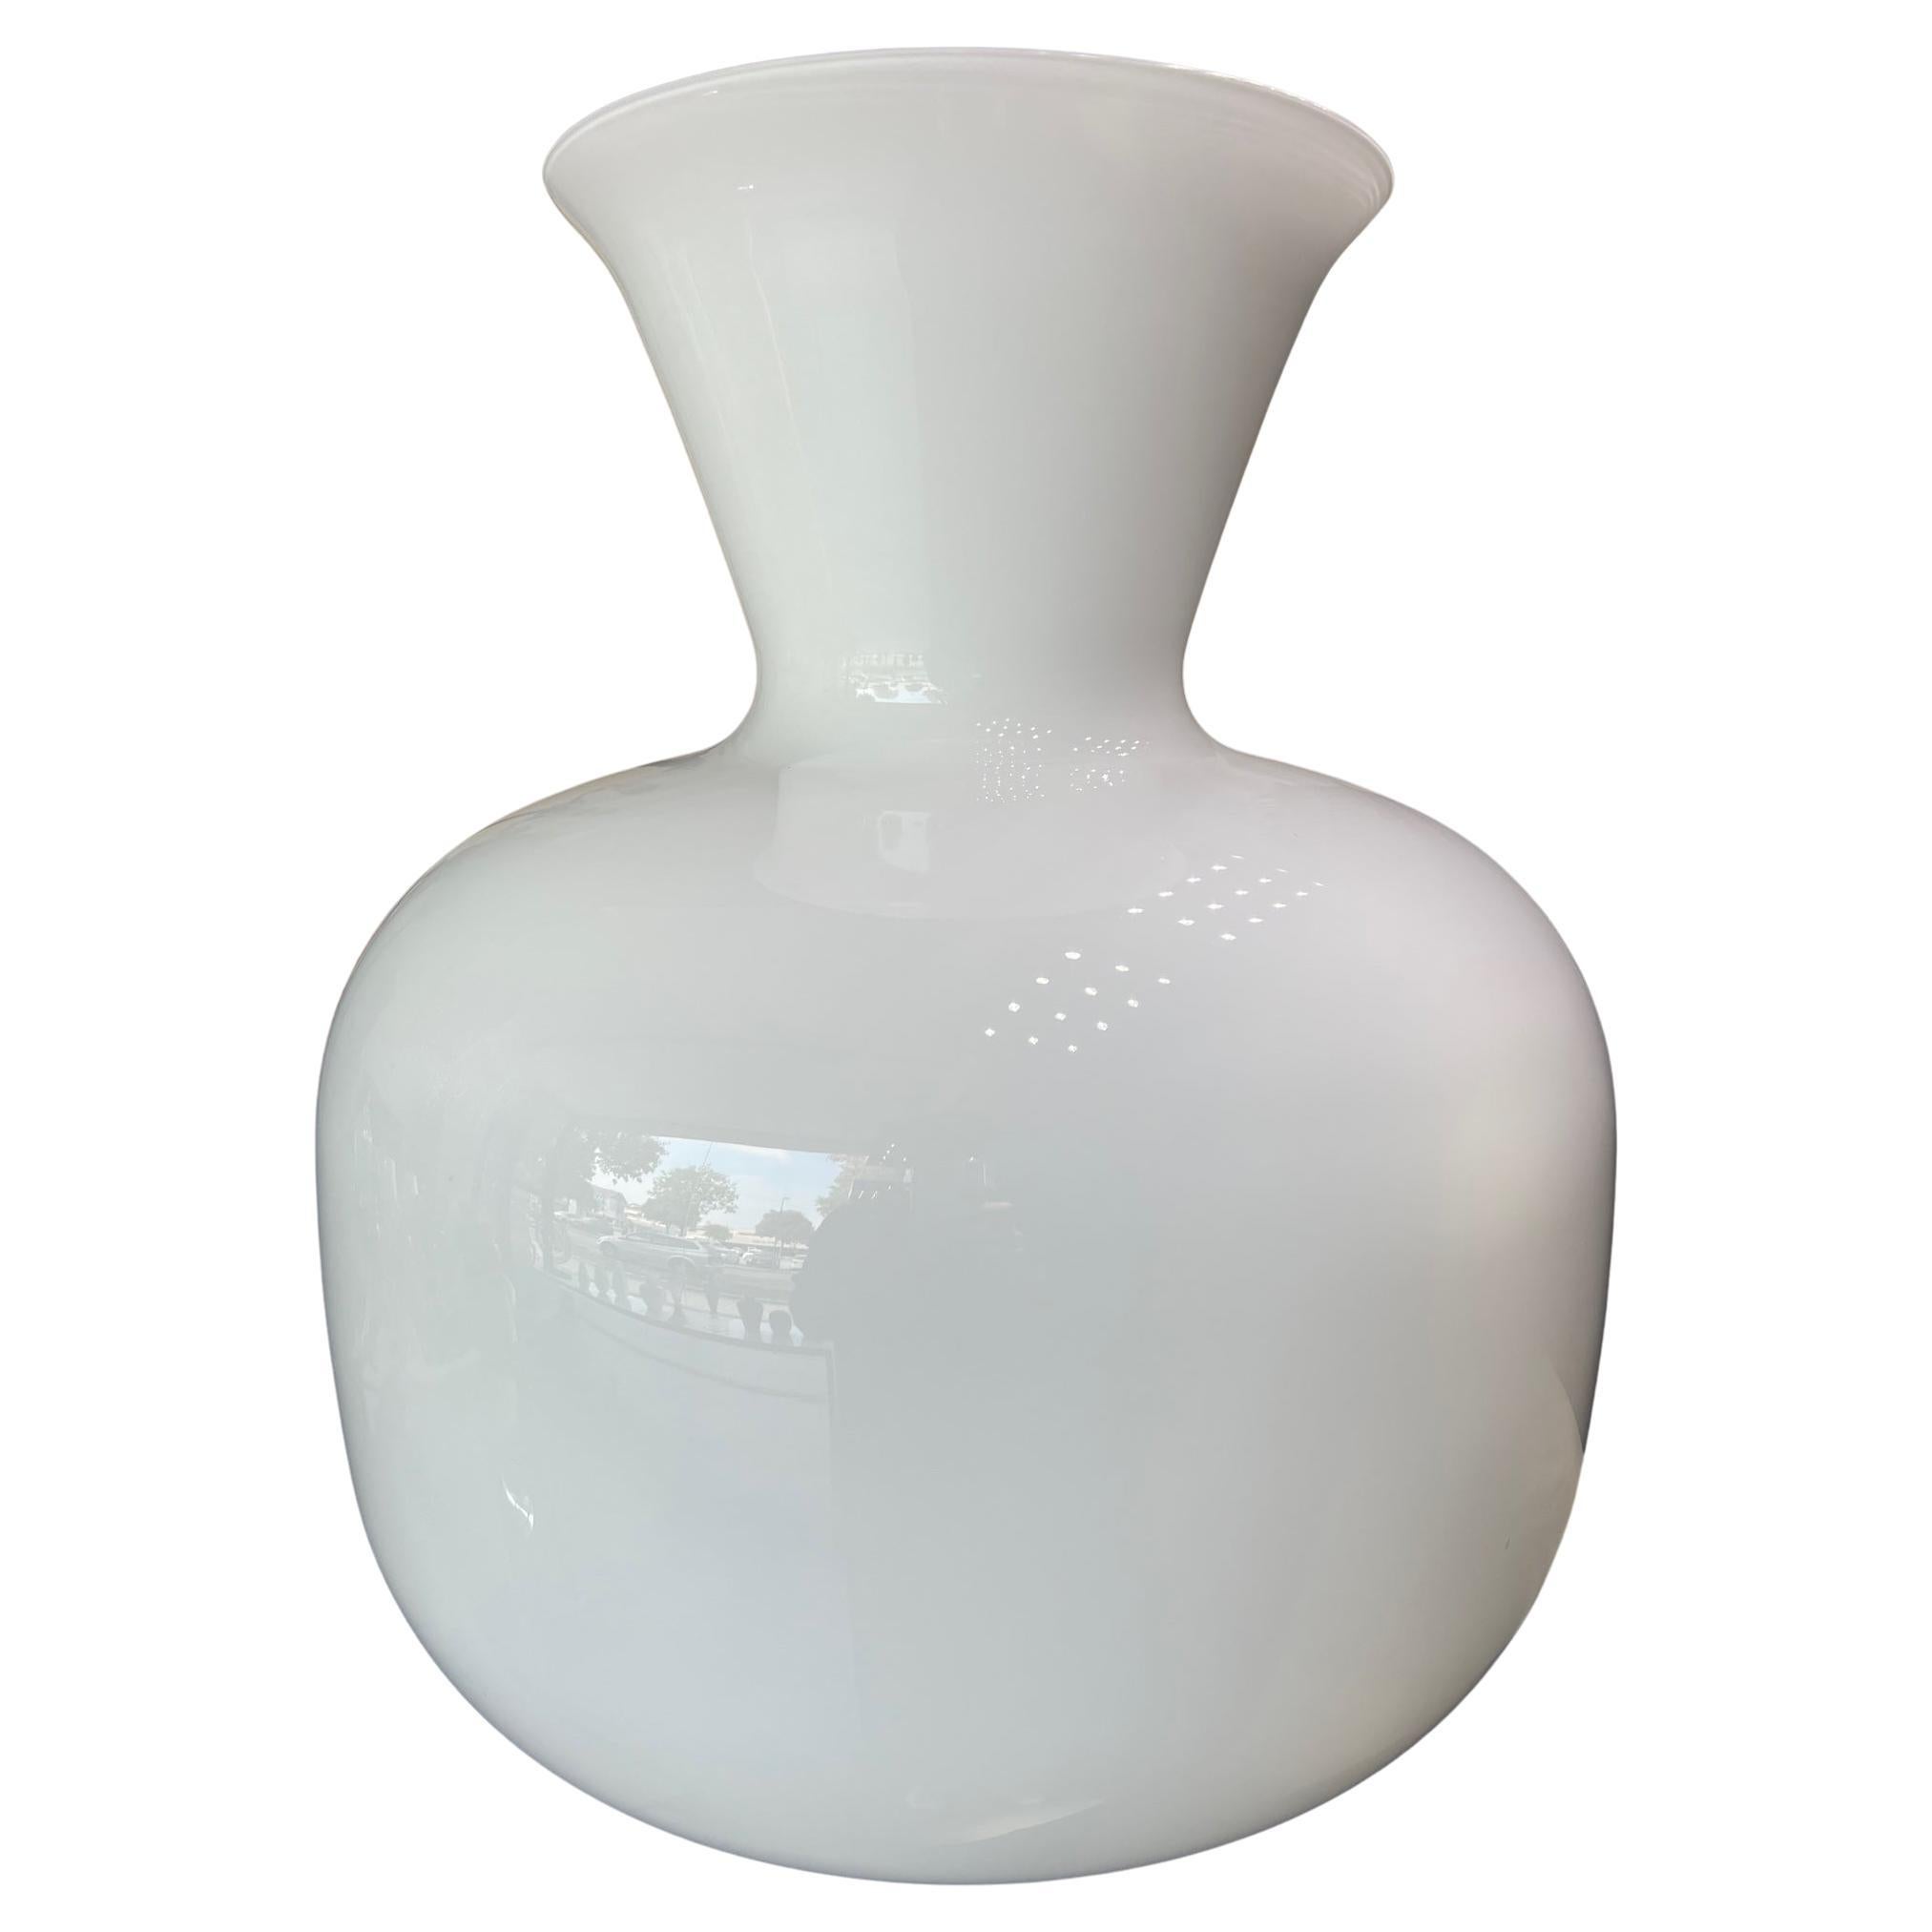 1295 Murano Hand Blown White Murano Glass Design For Sale